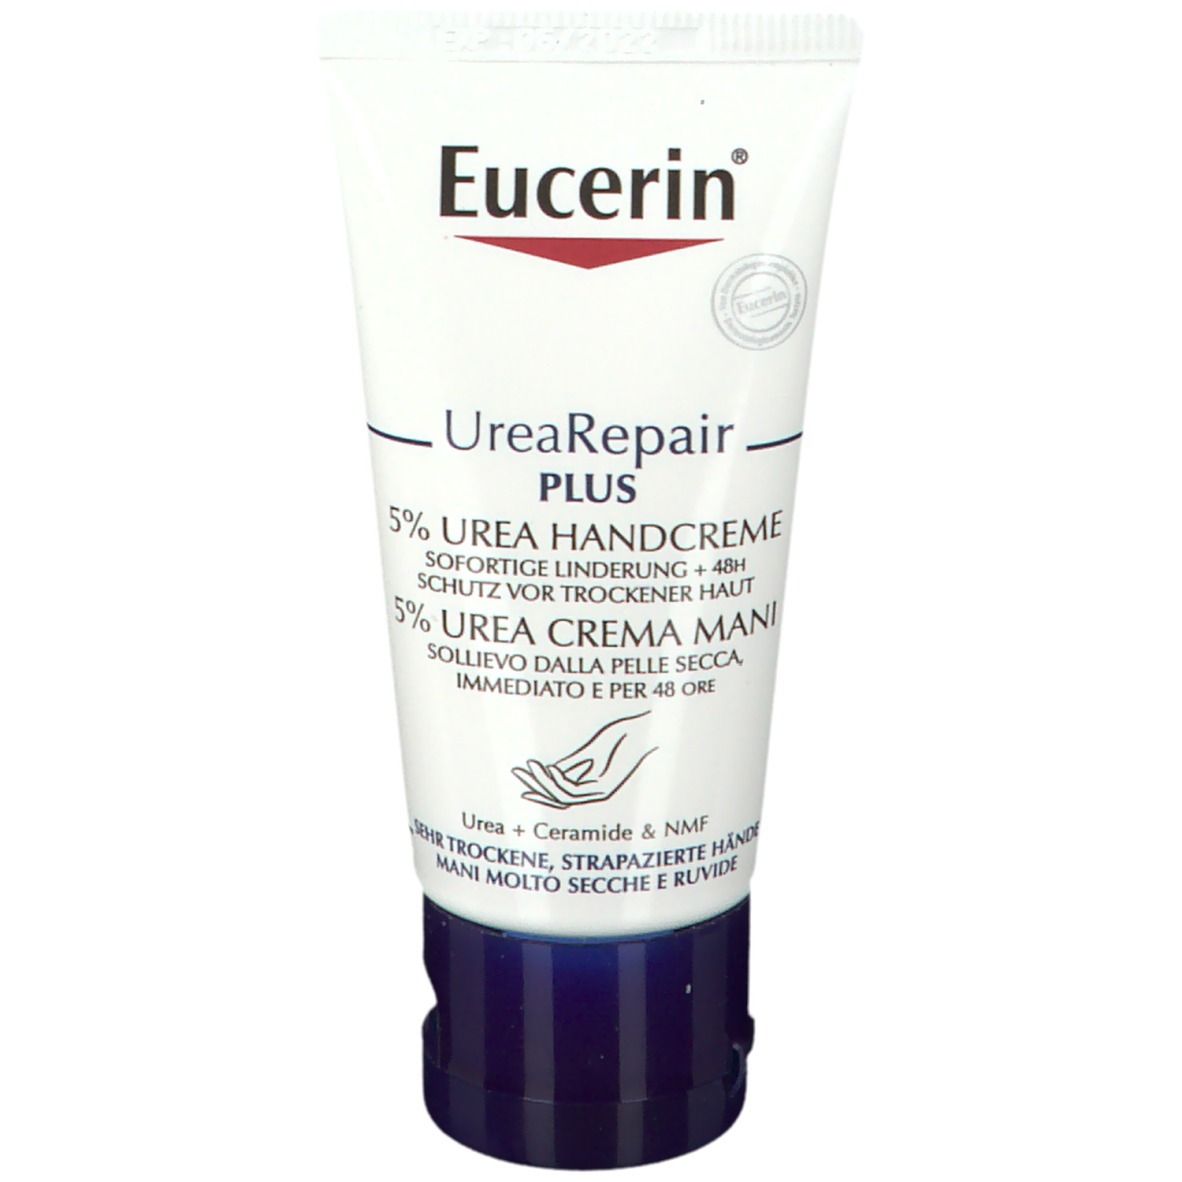 Image of Eucerin®Urea Handcreme